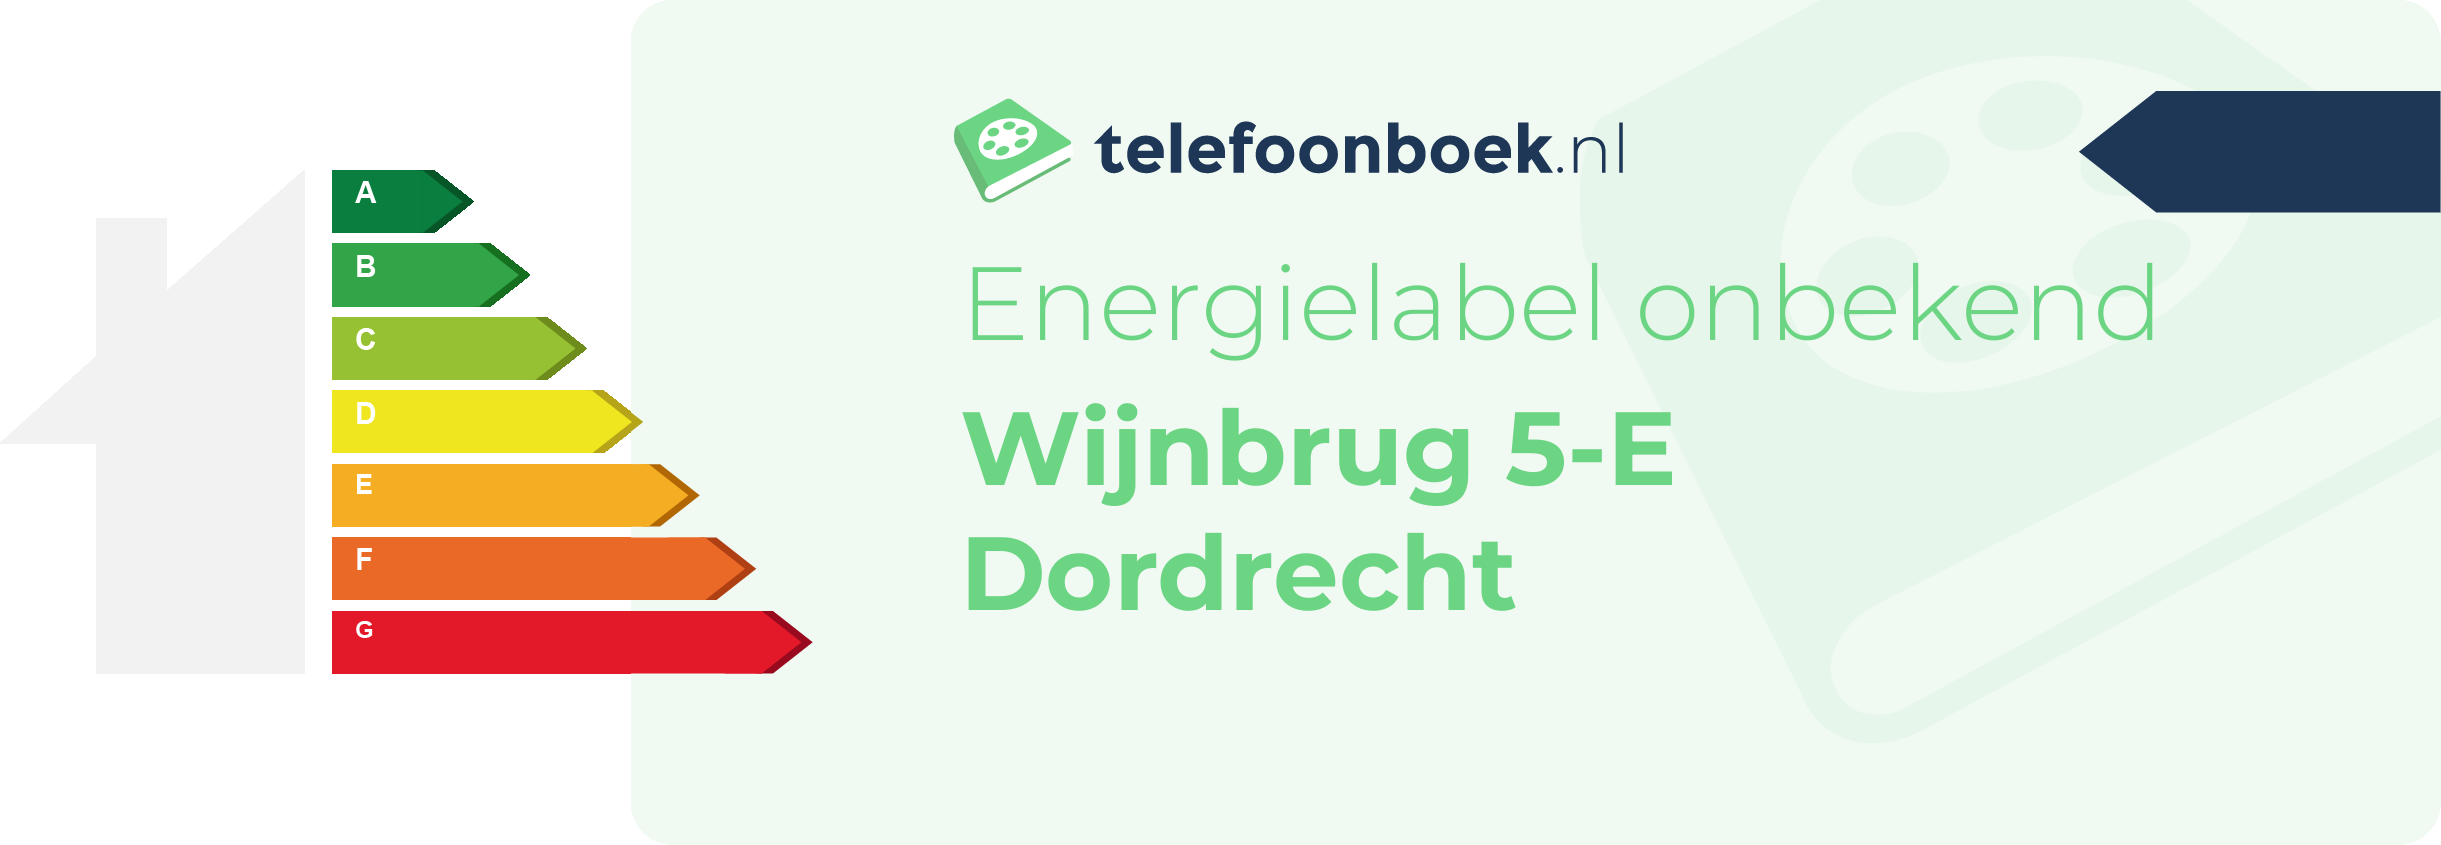 Energielabel Wijnbrug 5-E Dordrecht